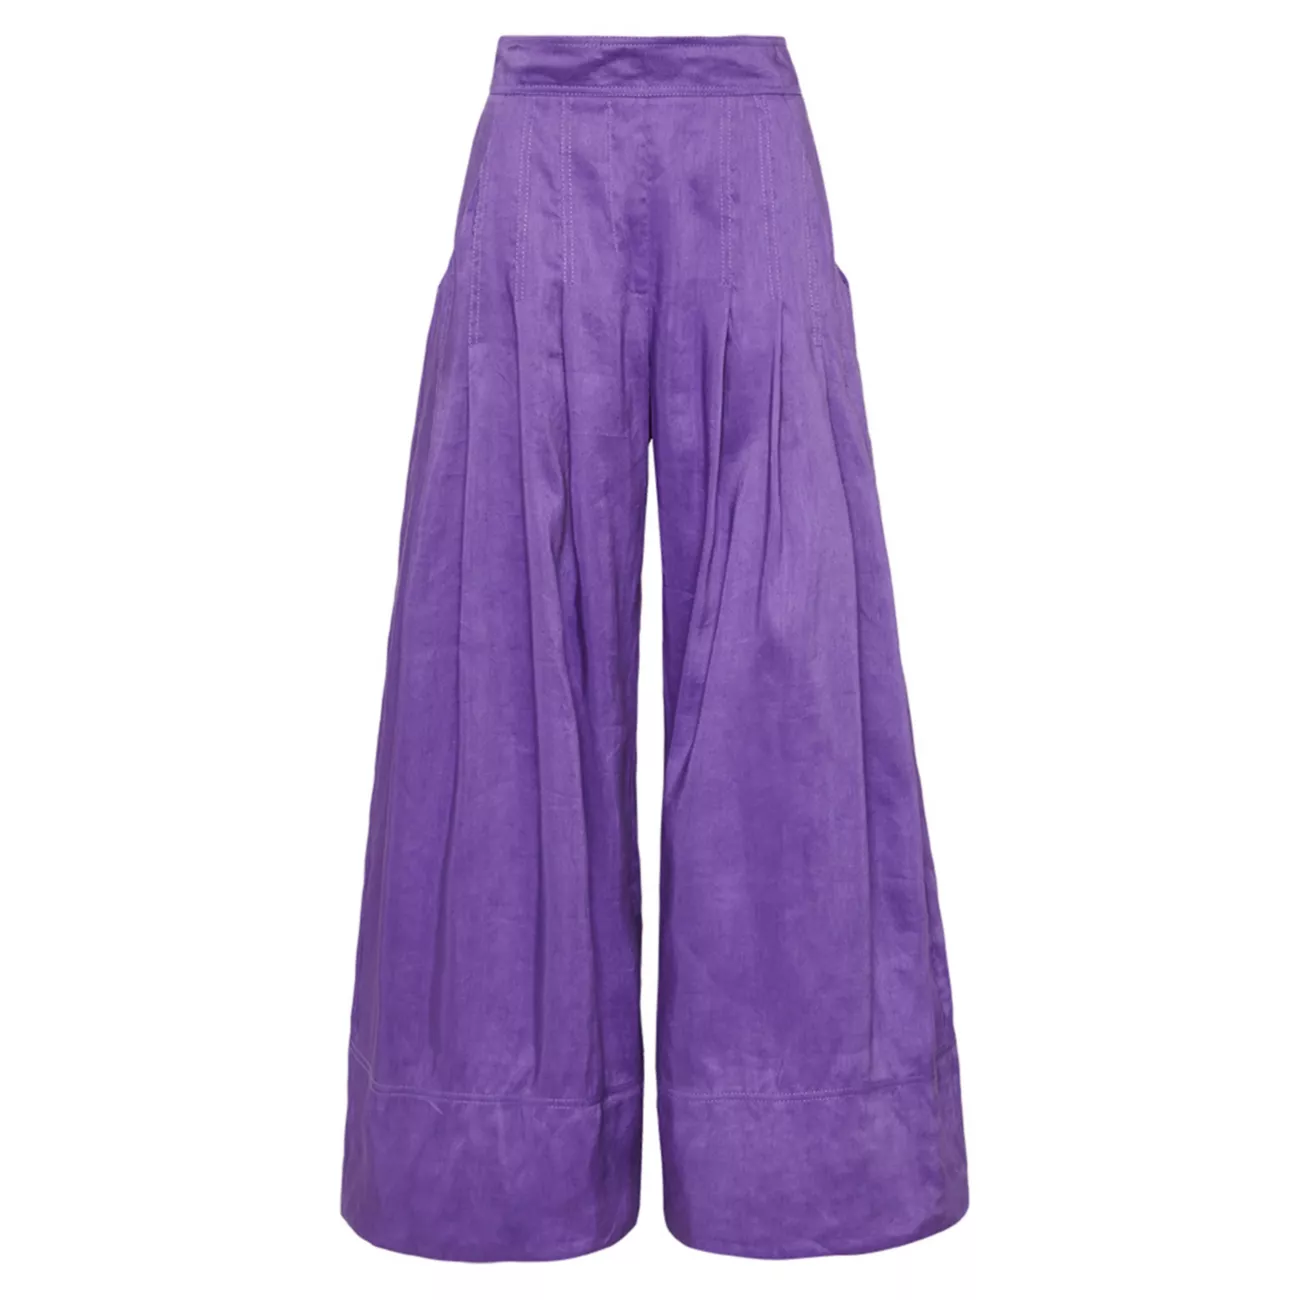 Широкие брюки-палаццо со складками Equinox из льняной смеси AJE